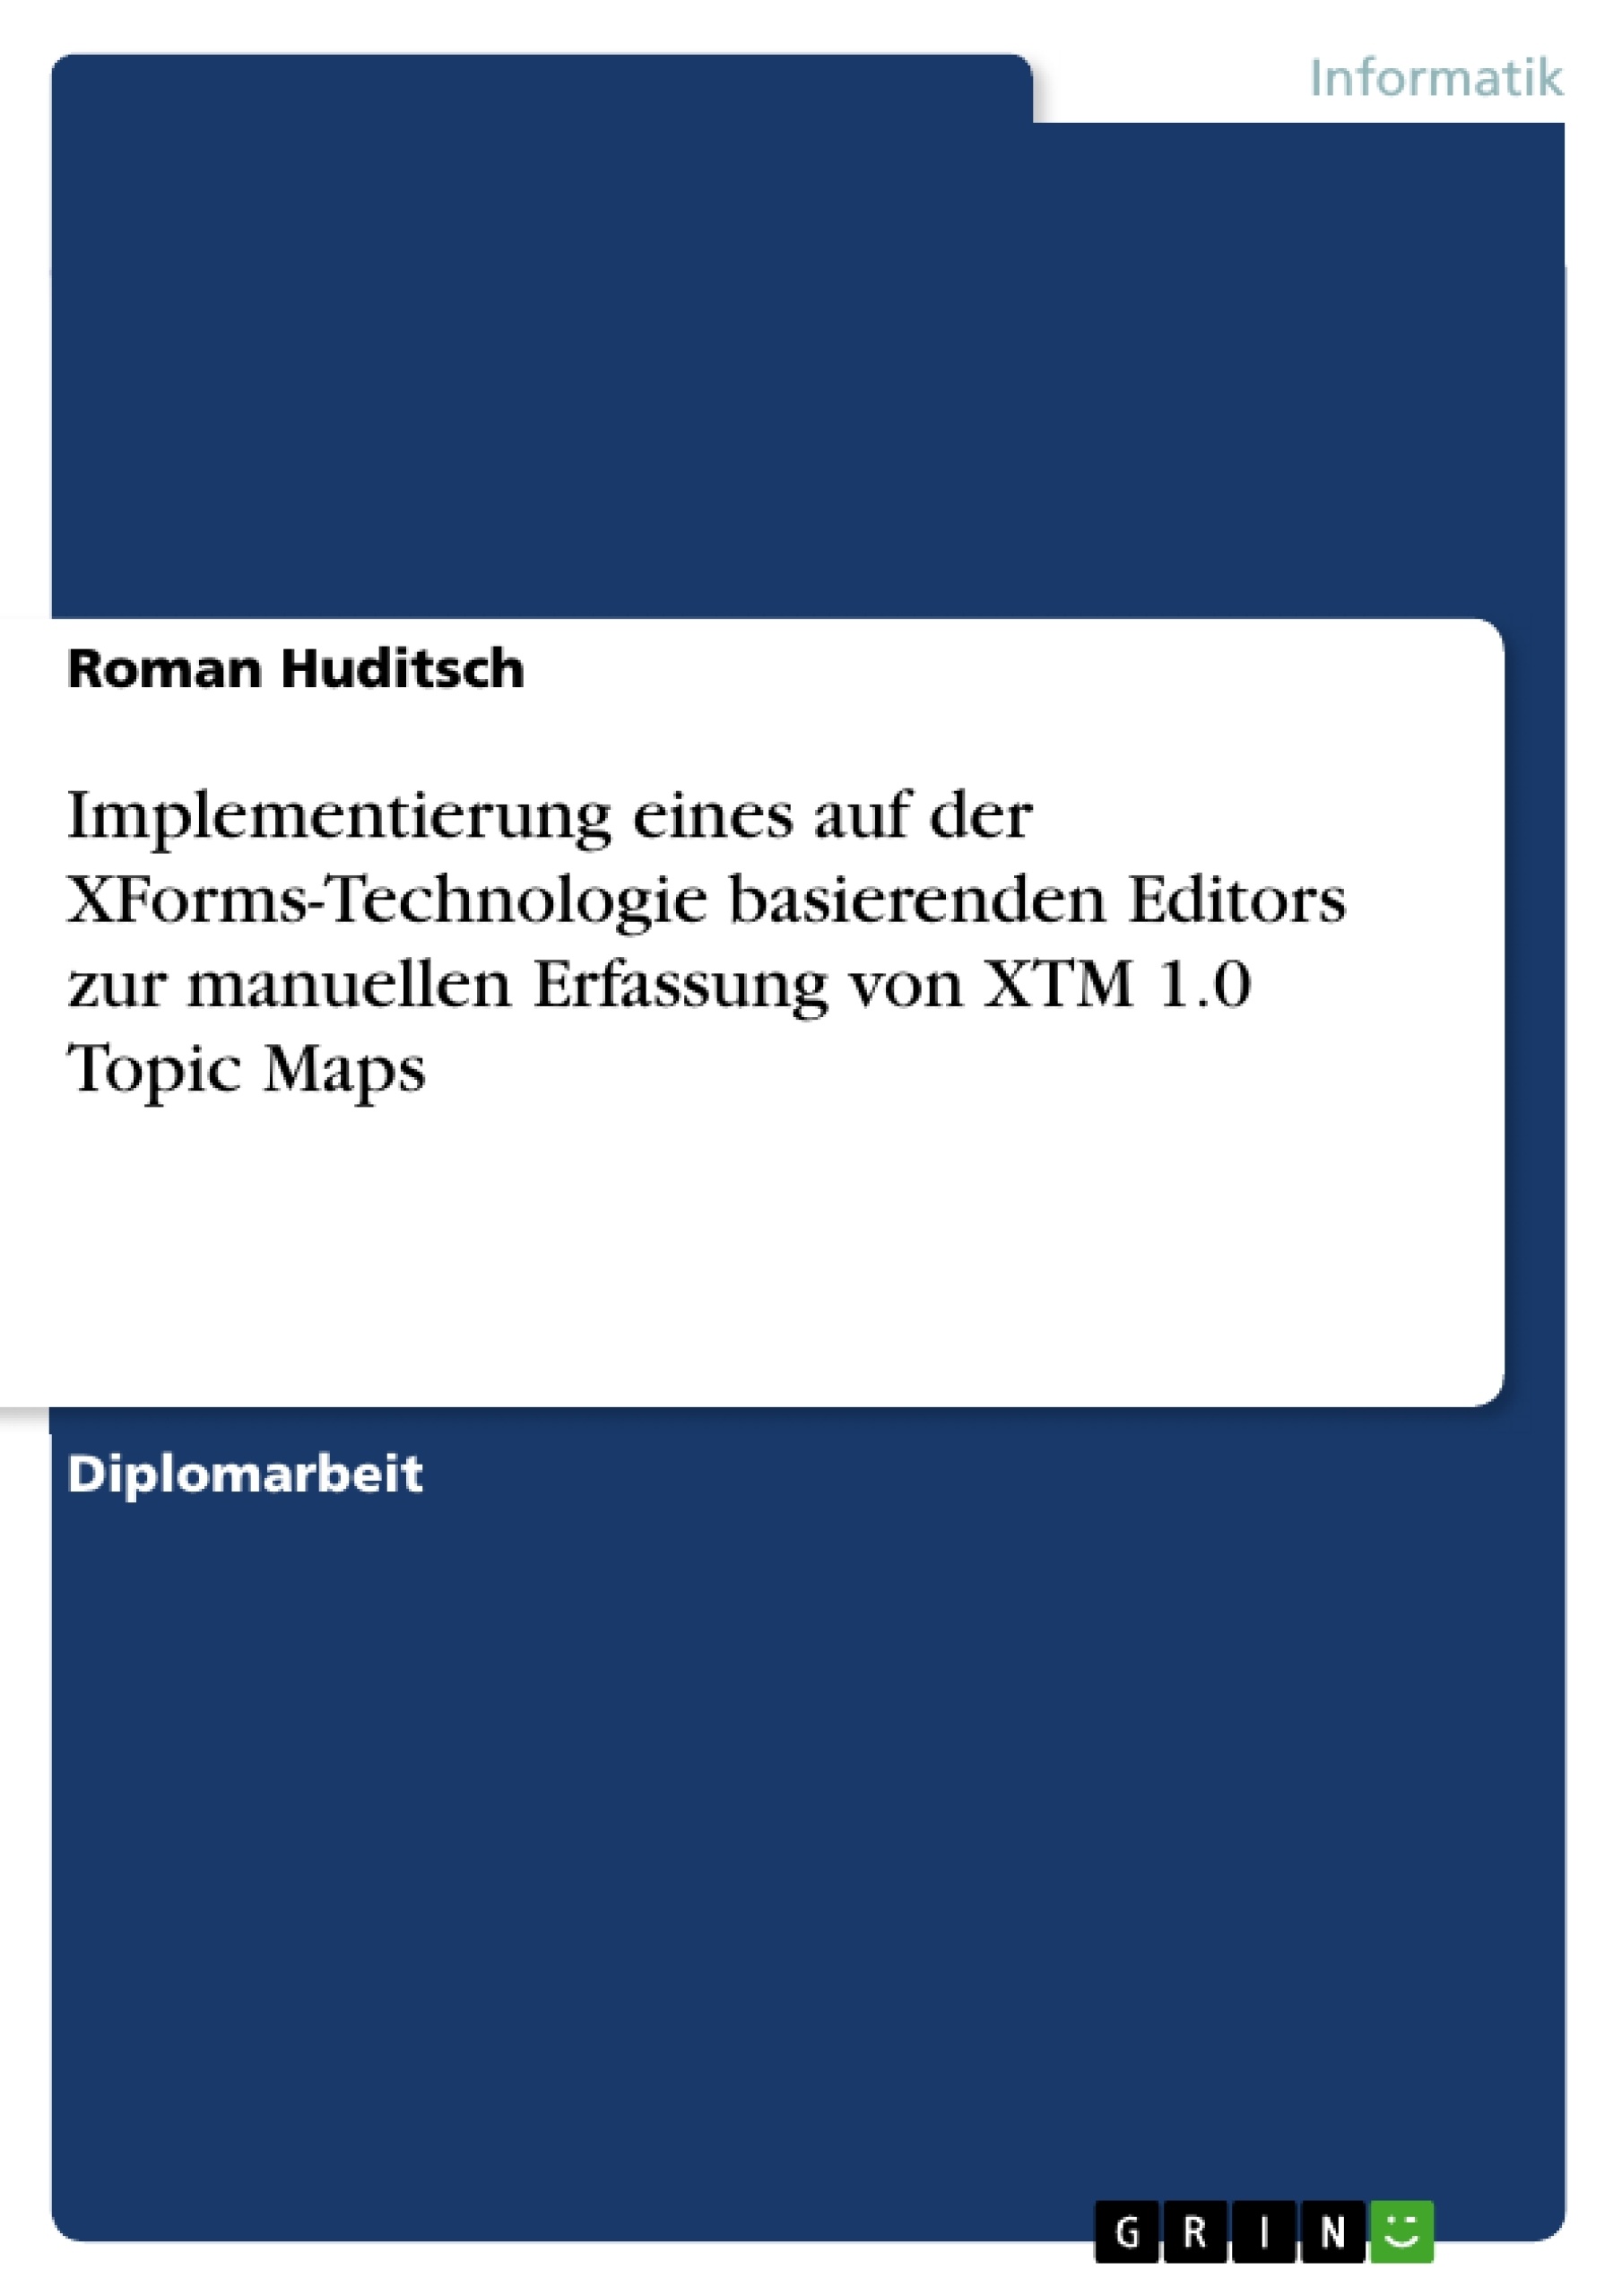 Título: Implementierung eines auf der XForms-Technologie basierenden Editors zur manuellen Erfassung von XTM 1.0 Topic Maps